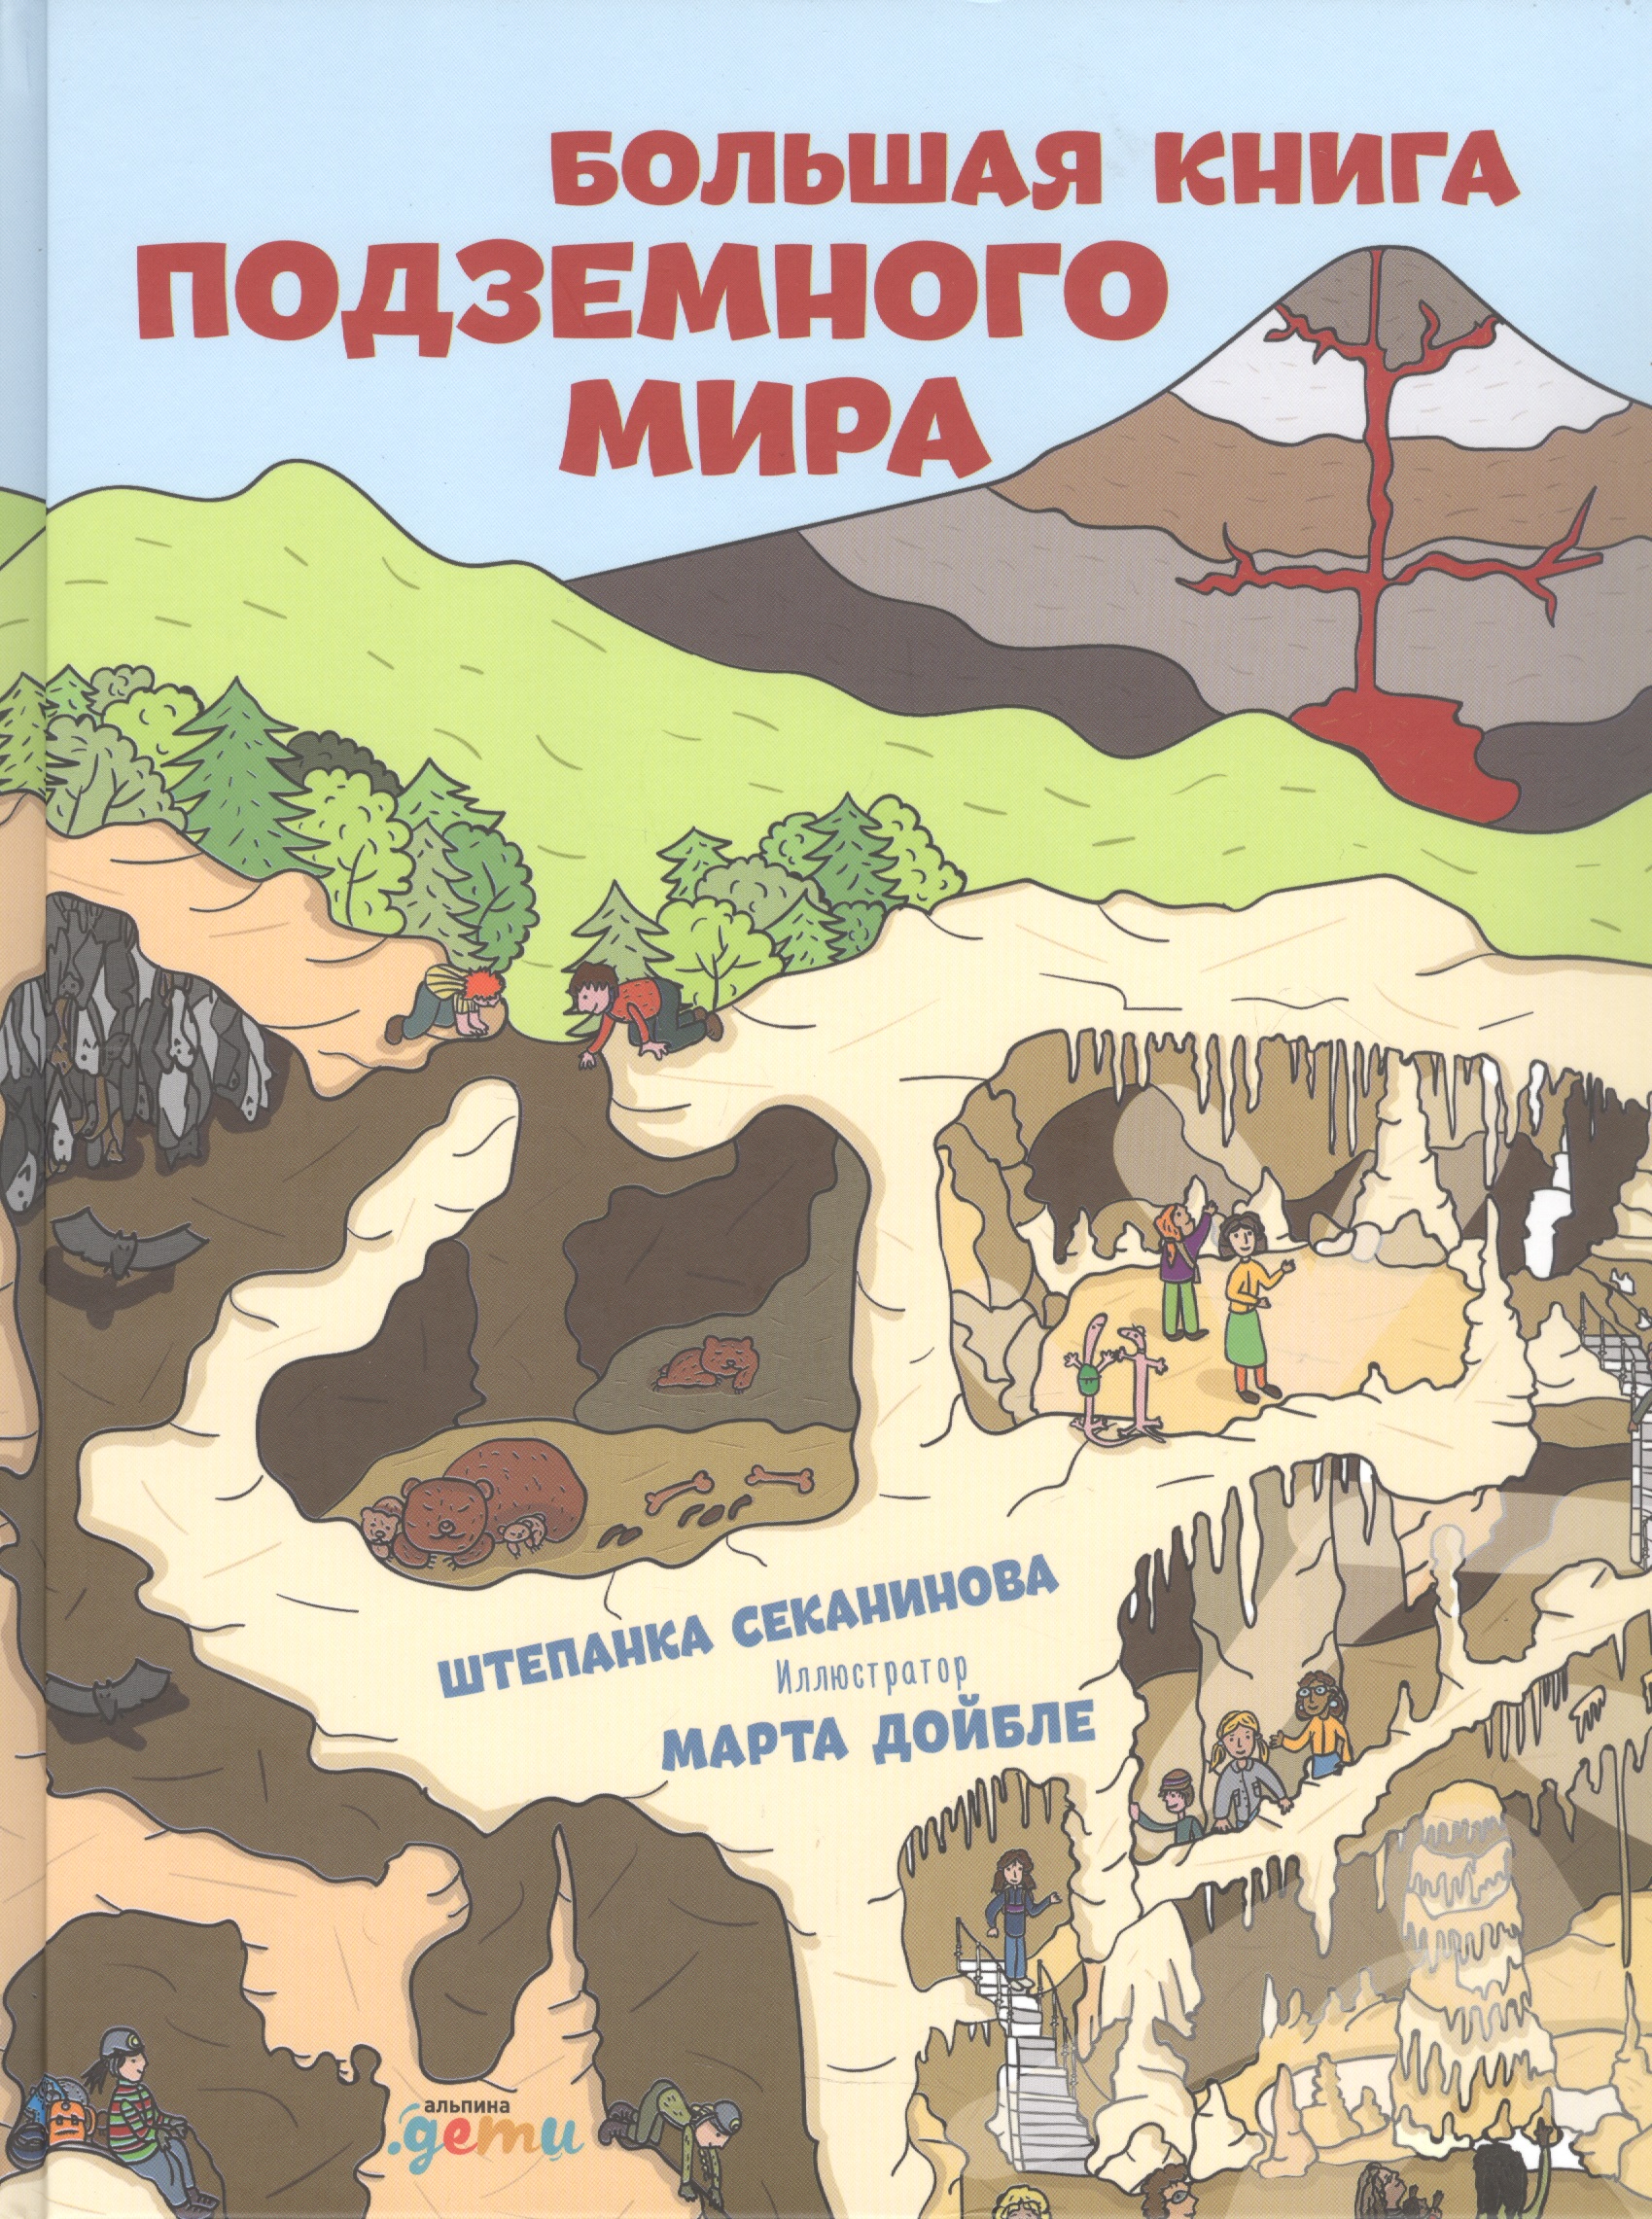 секанинова штепанка дойбле марта большая книга подземного мира Секанинова Штепанка Большая книга подземного мира. Для детей 7-12 лет